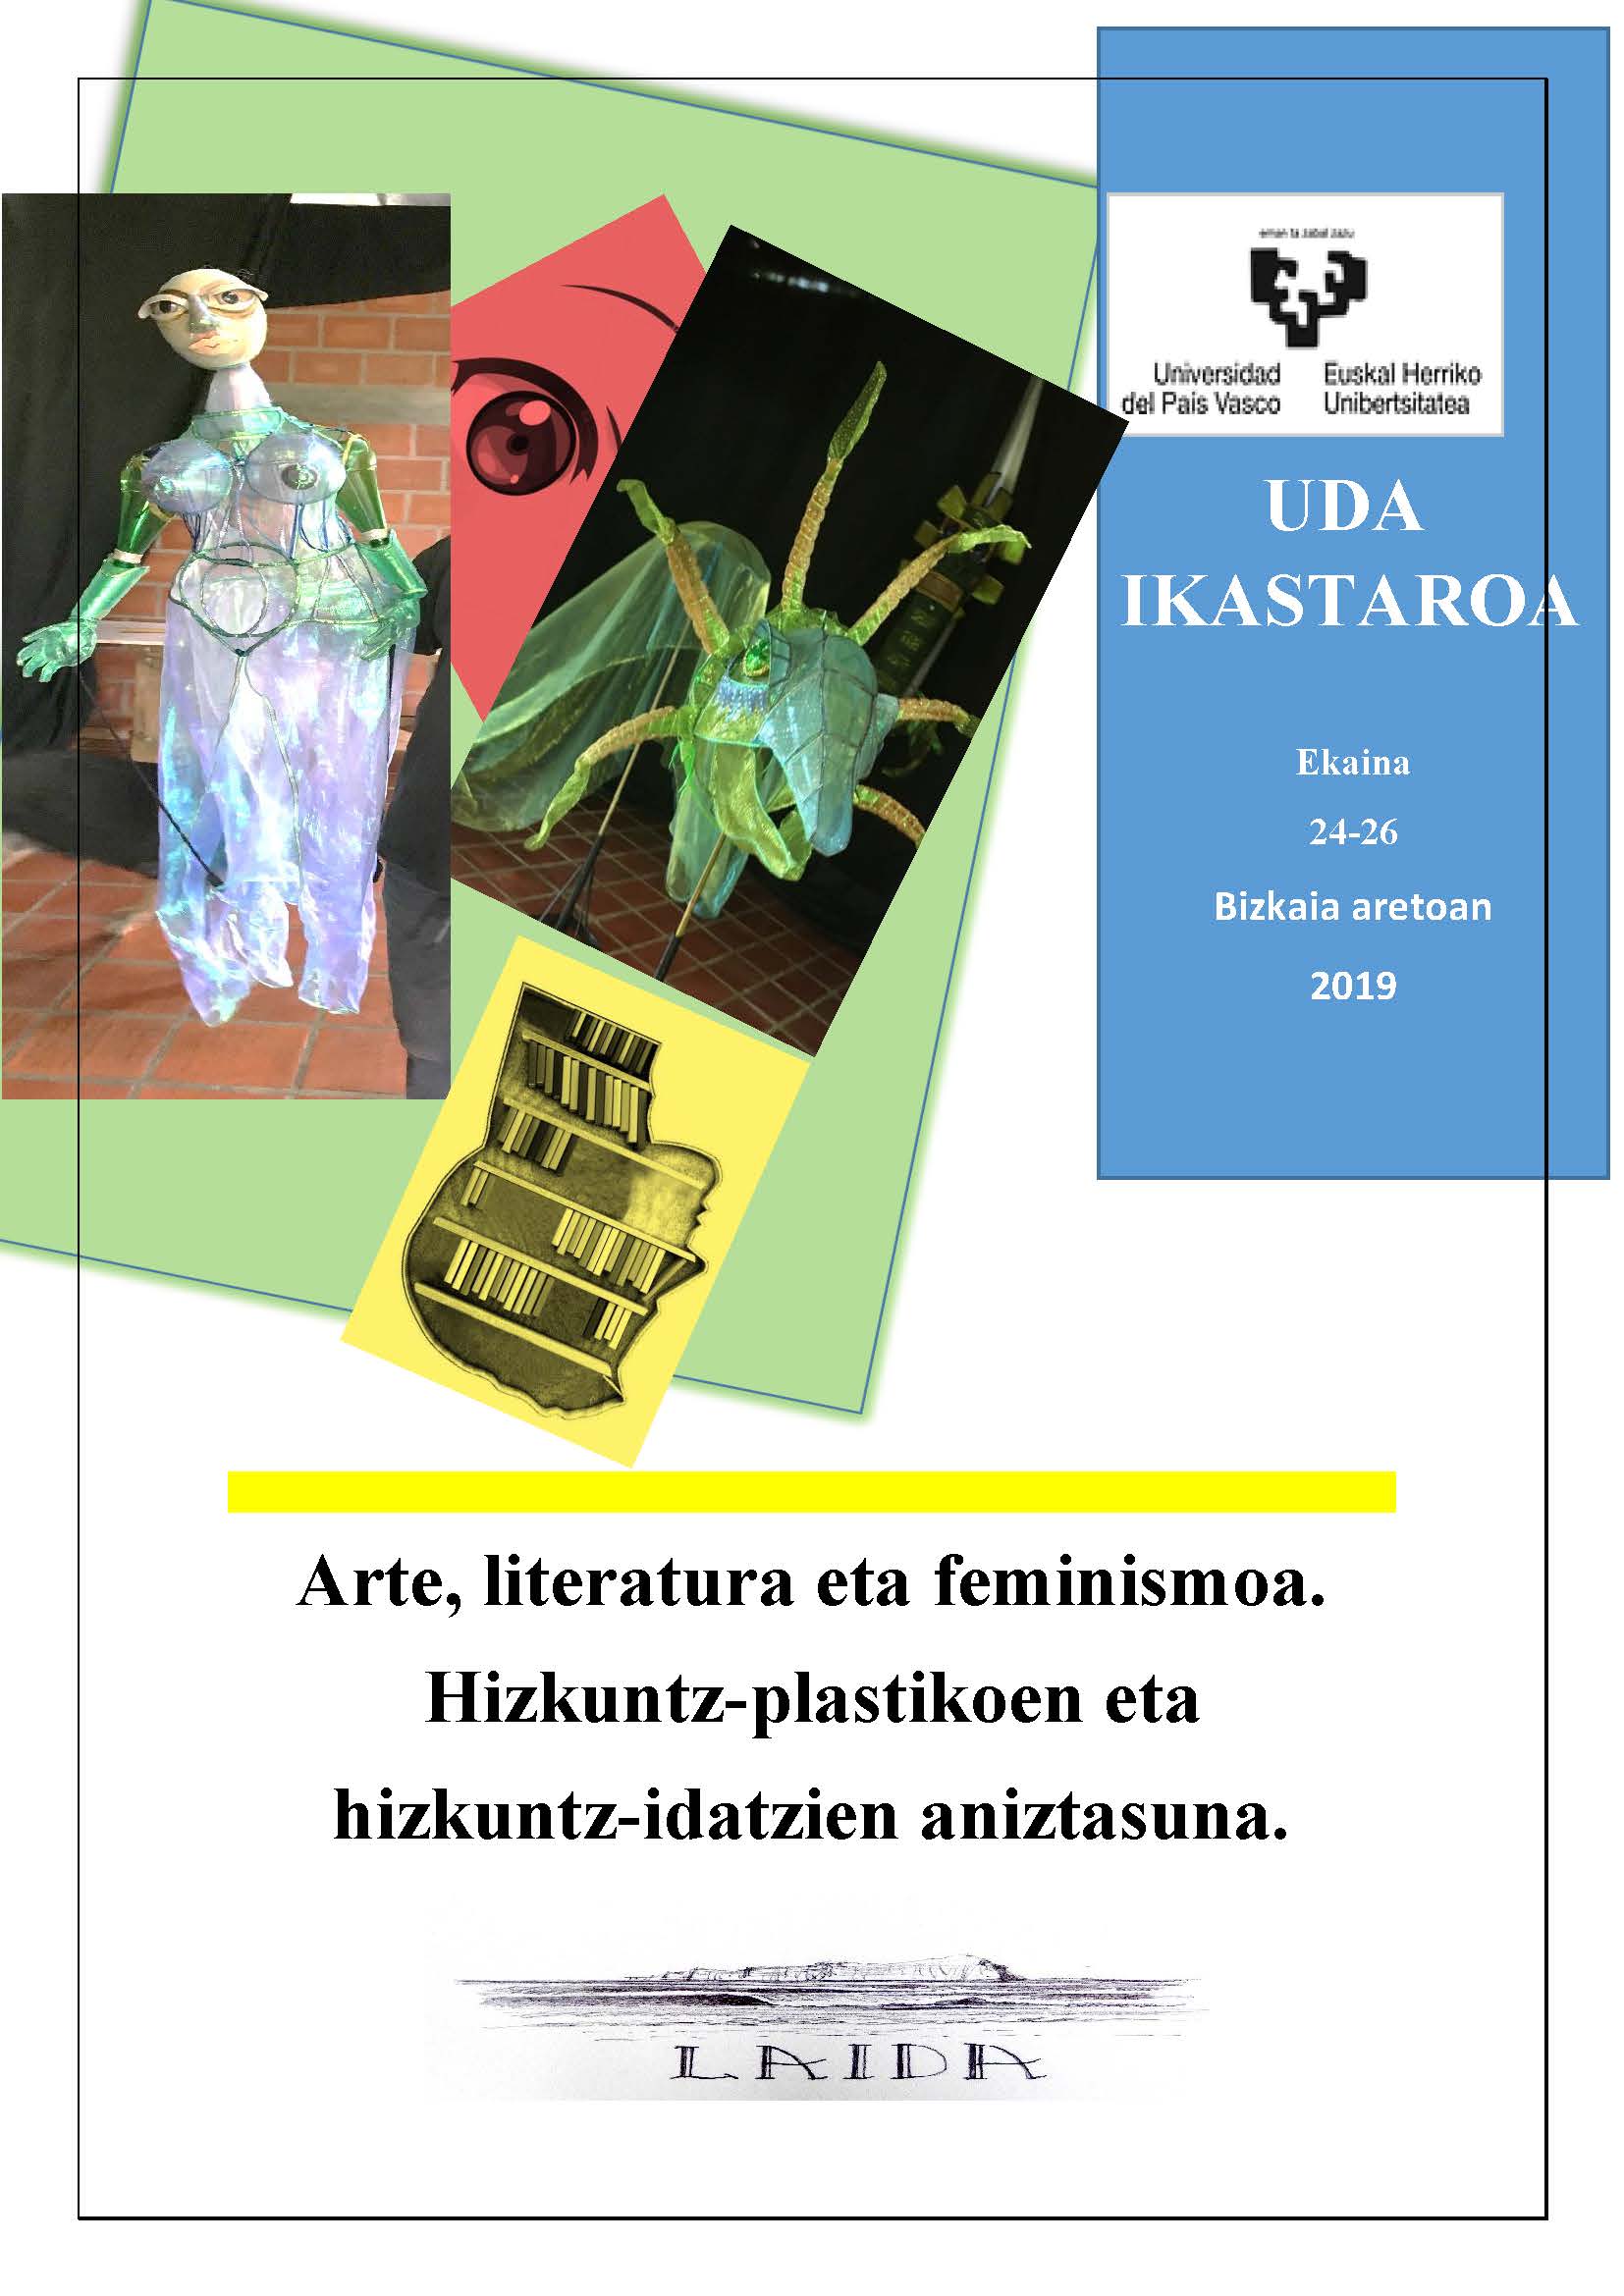 Arte, literatura eta feminismoa. Hizkuntz-plastikoen eta hizkuntz-idatzien aniztasuna